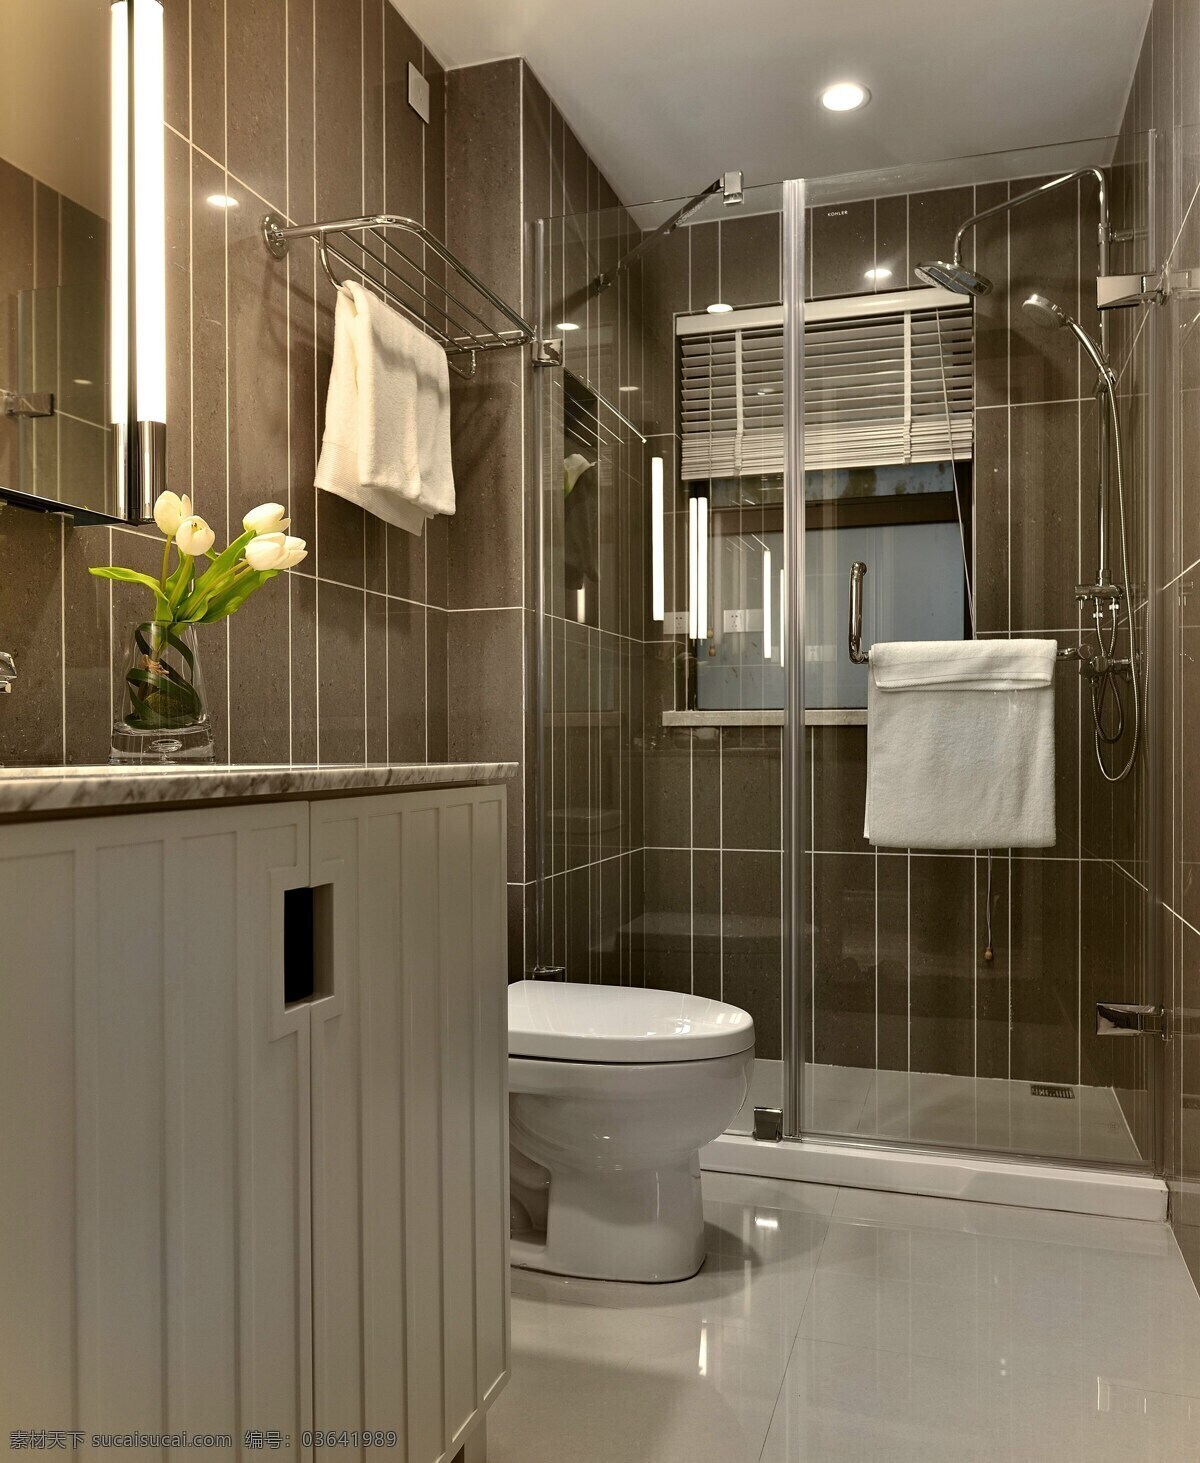 现代 时尚 浴室 褐色 背景 墙 室内装修 效果图 浴室装修 白色地板 瓷砖桌面 玻璃浴室